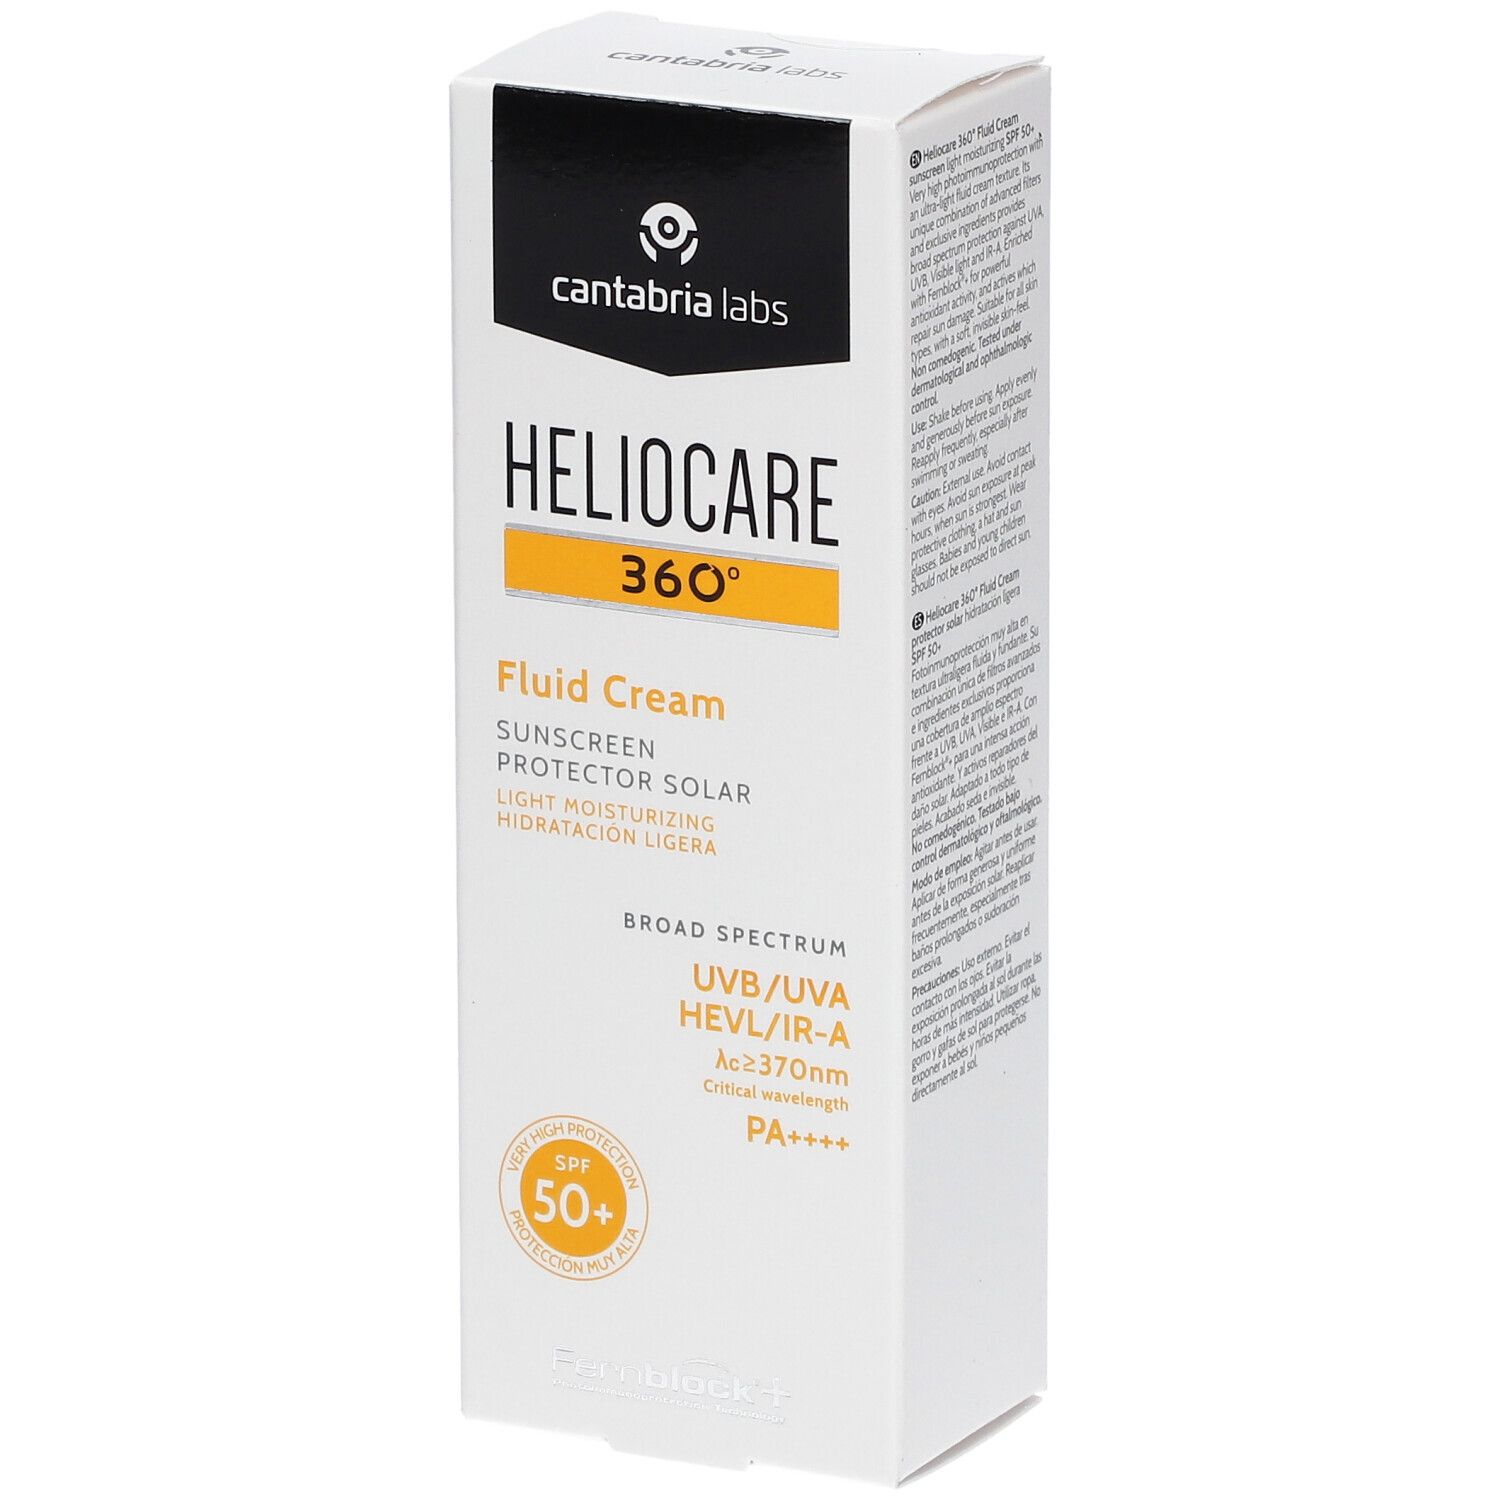 HELIOCARE® 360° Fluid Cream SPF 50+